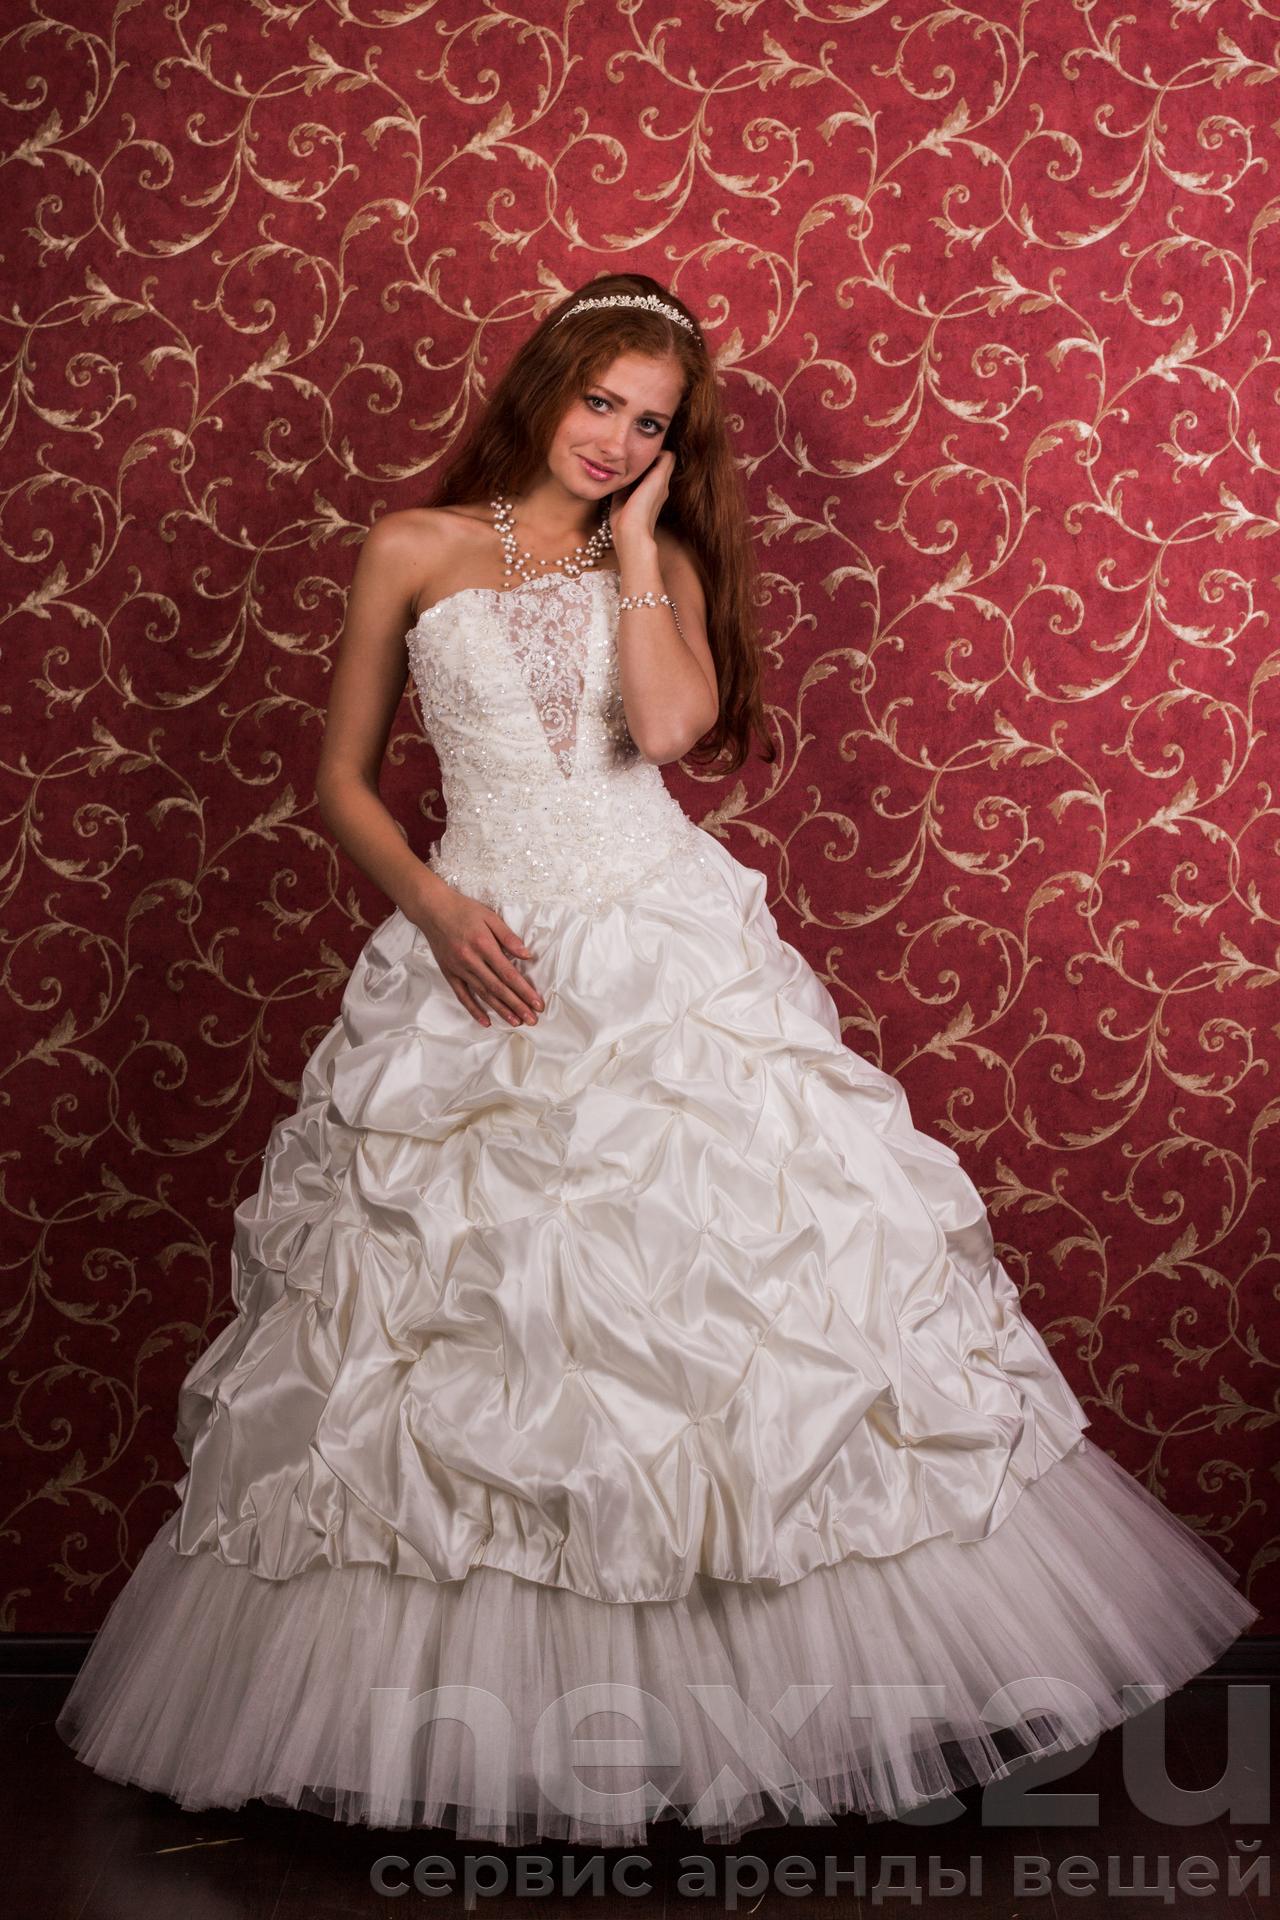 Недорогие платья екатеринбург. Пышное белое платье. Платье напрокат на свадьбу. Прокат свадебных платьев. Взять свадебное платье.